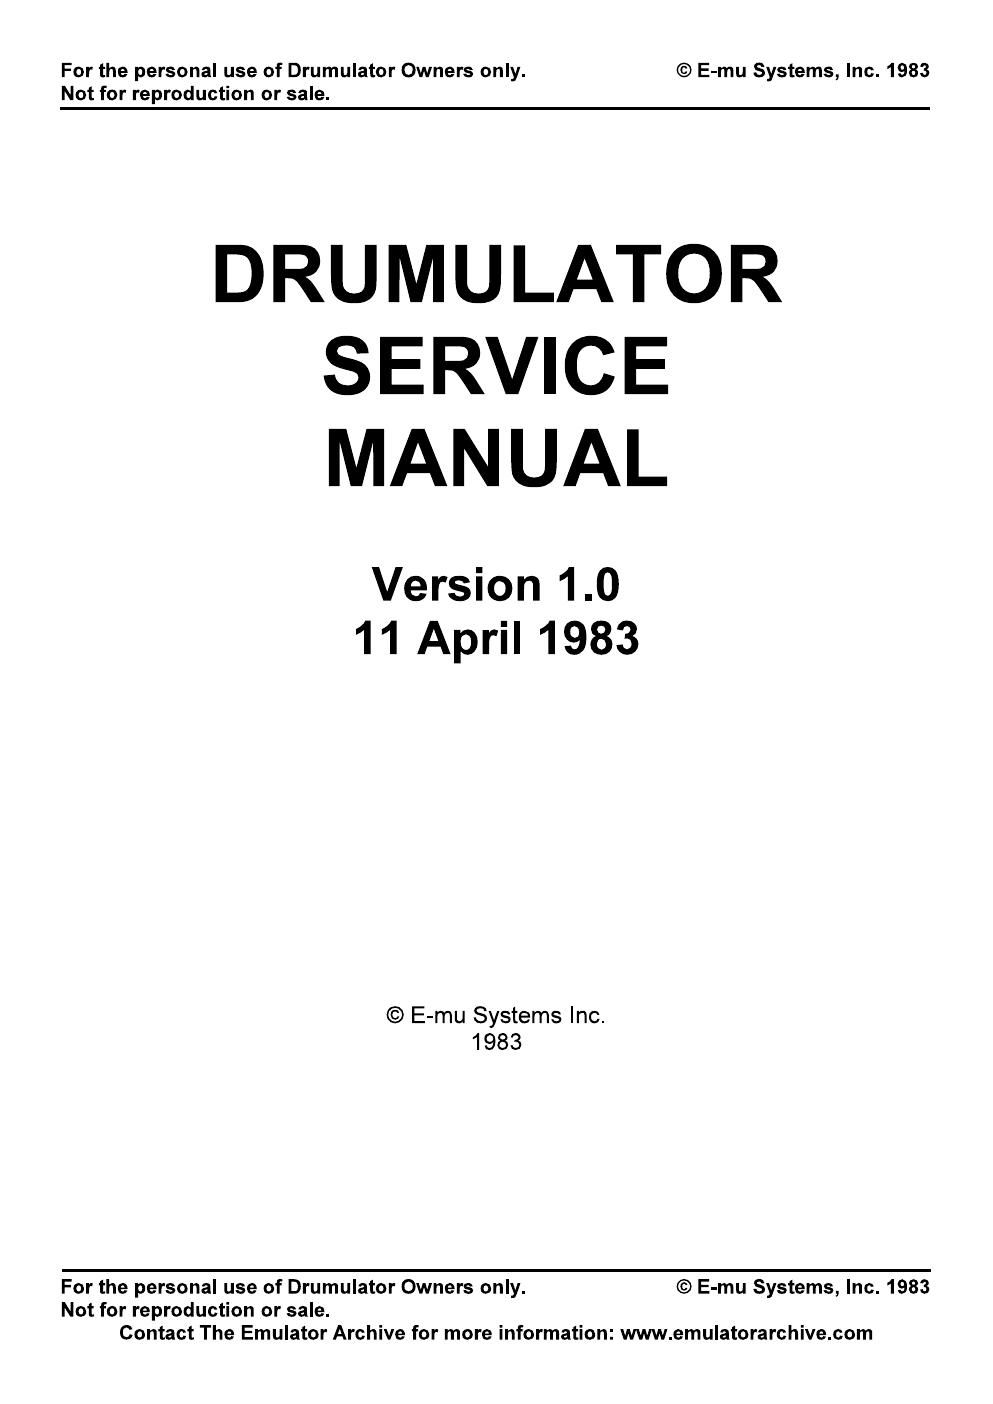 emu drumulator owners manual 1983